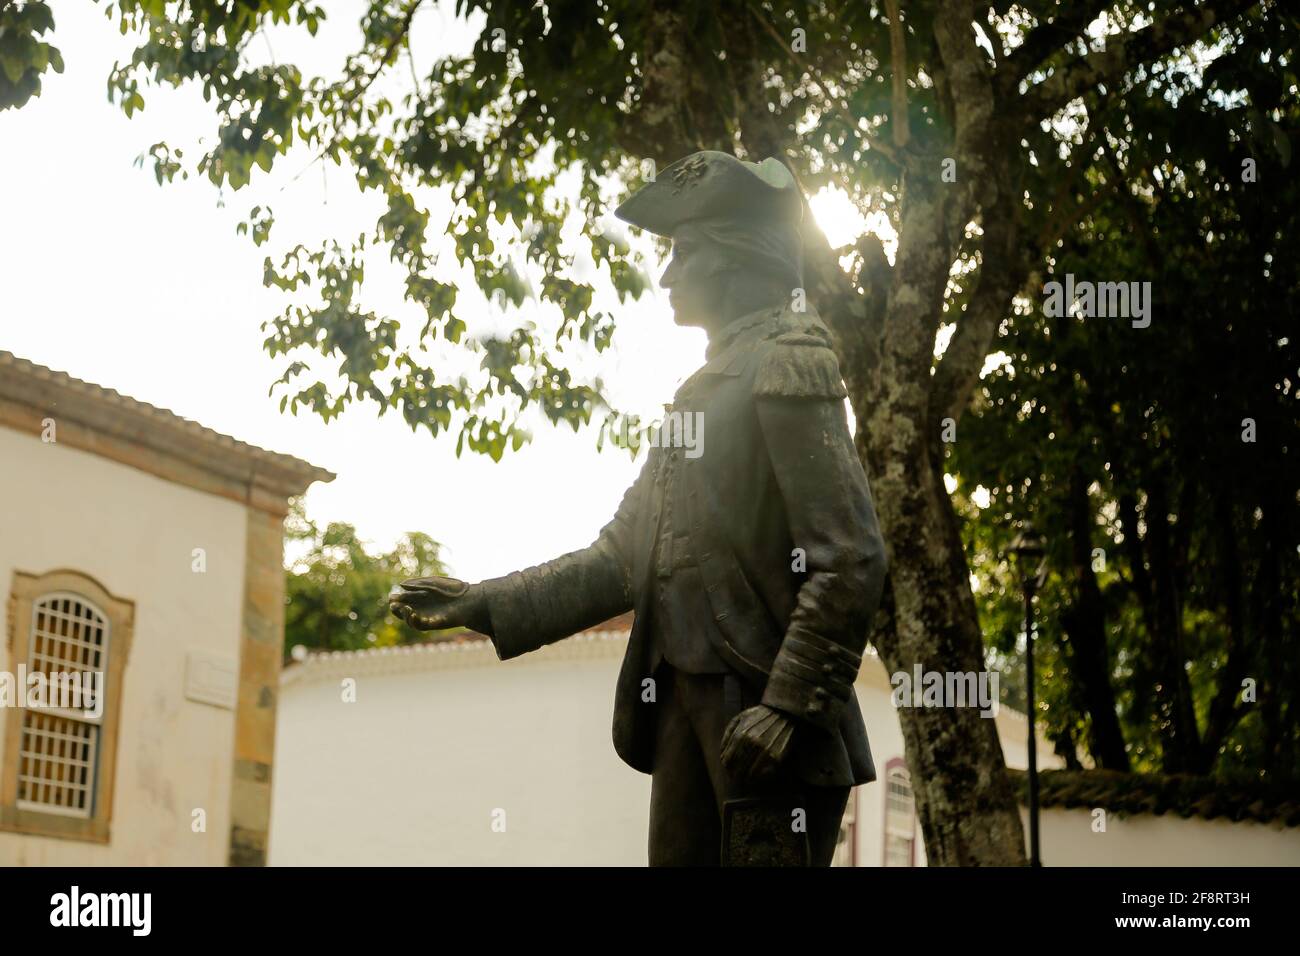 Tiradentes, Minas Gerais, Brésil - 20 février 2021 : statue métallique de Tiradentes représentant le jeune ensign sur une route publique Banque D'Images